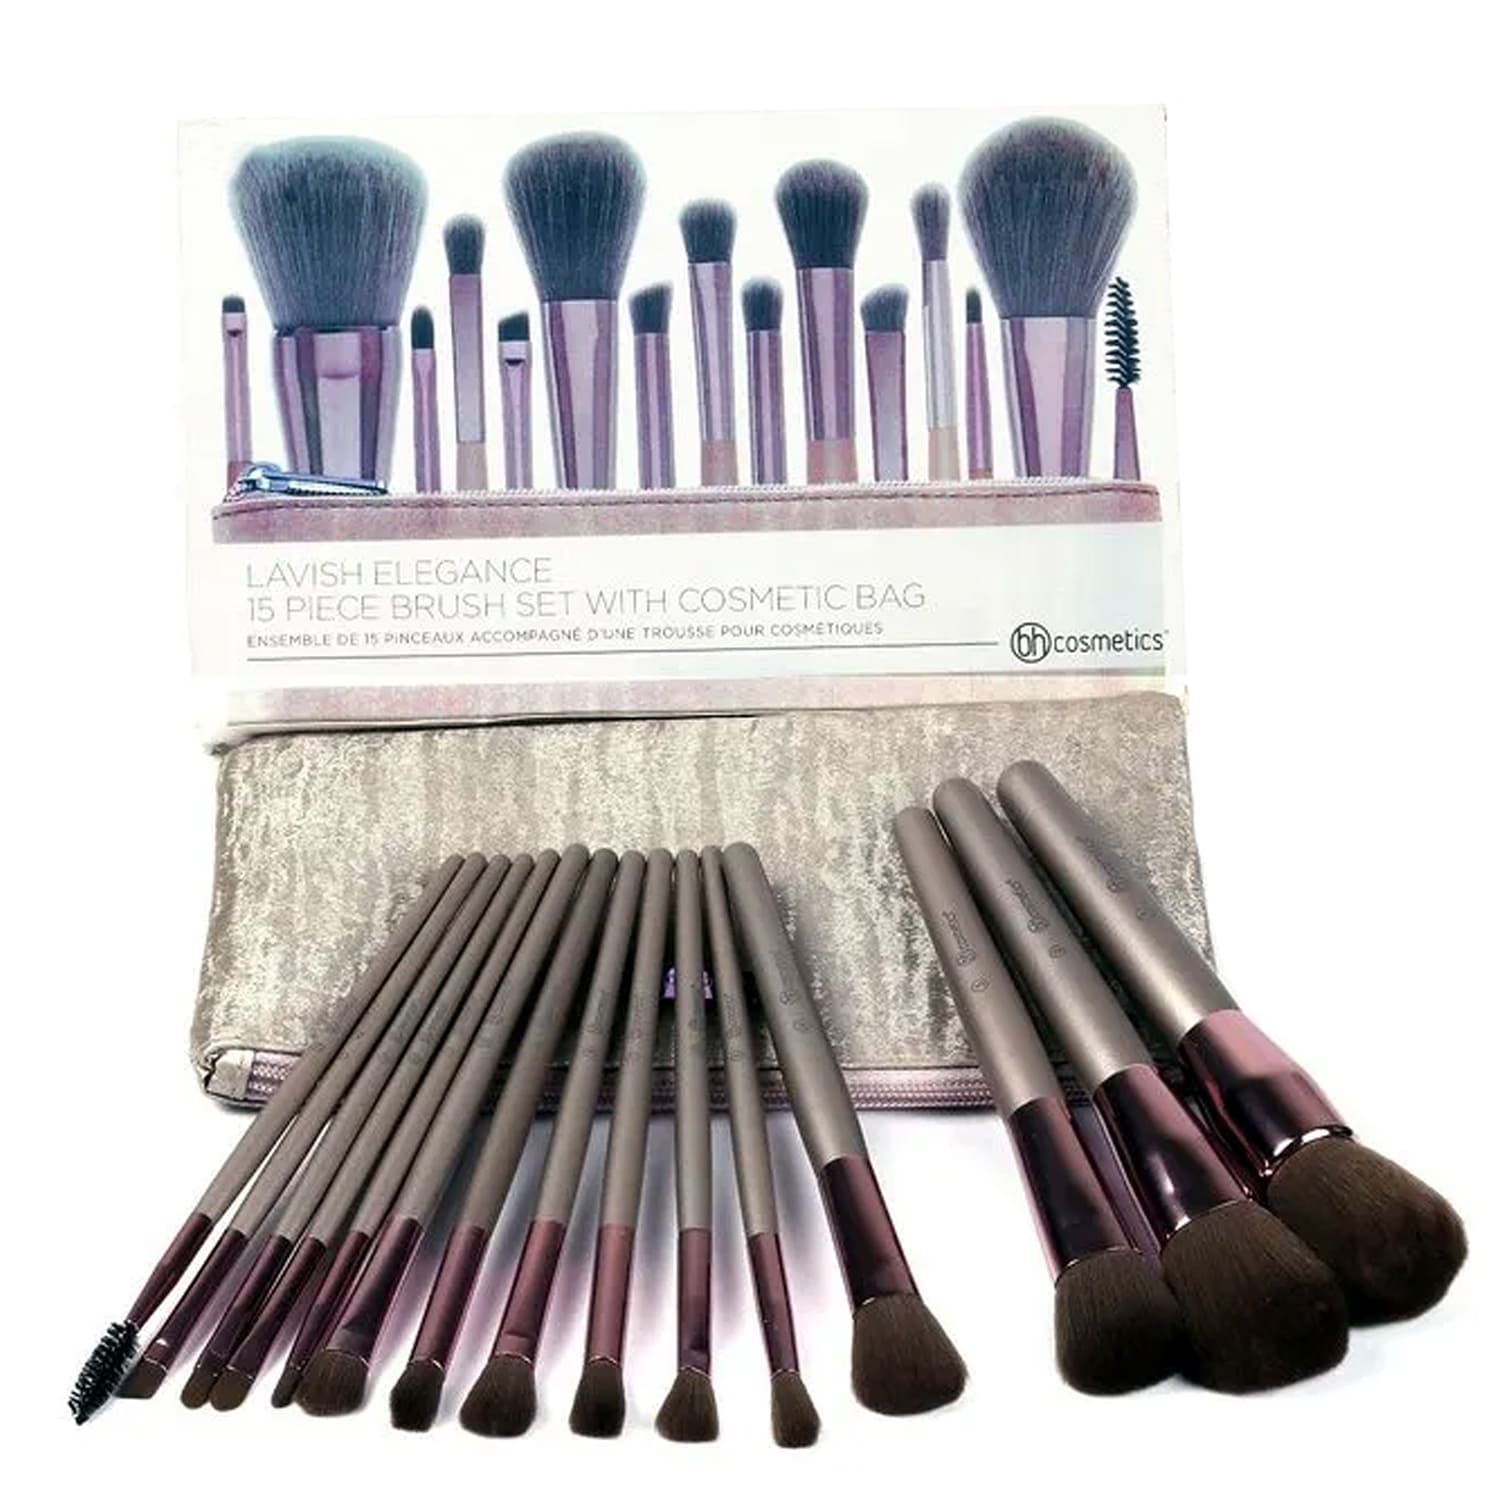 ست براش آرایشی بی اچ کازمتیکس مجموعه 15 عددی BH Cosmetics Lavish Elegance 15 Piece Brush Set